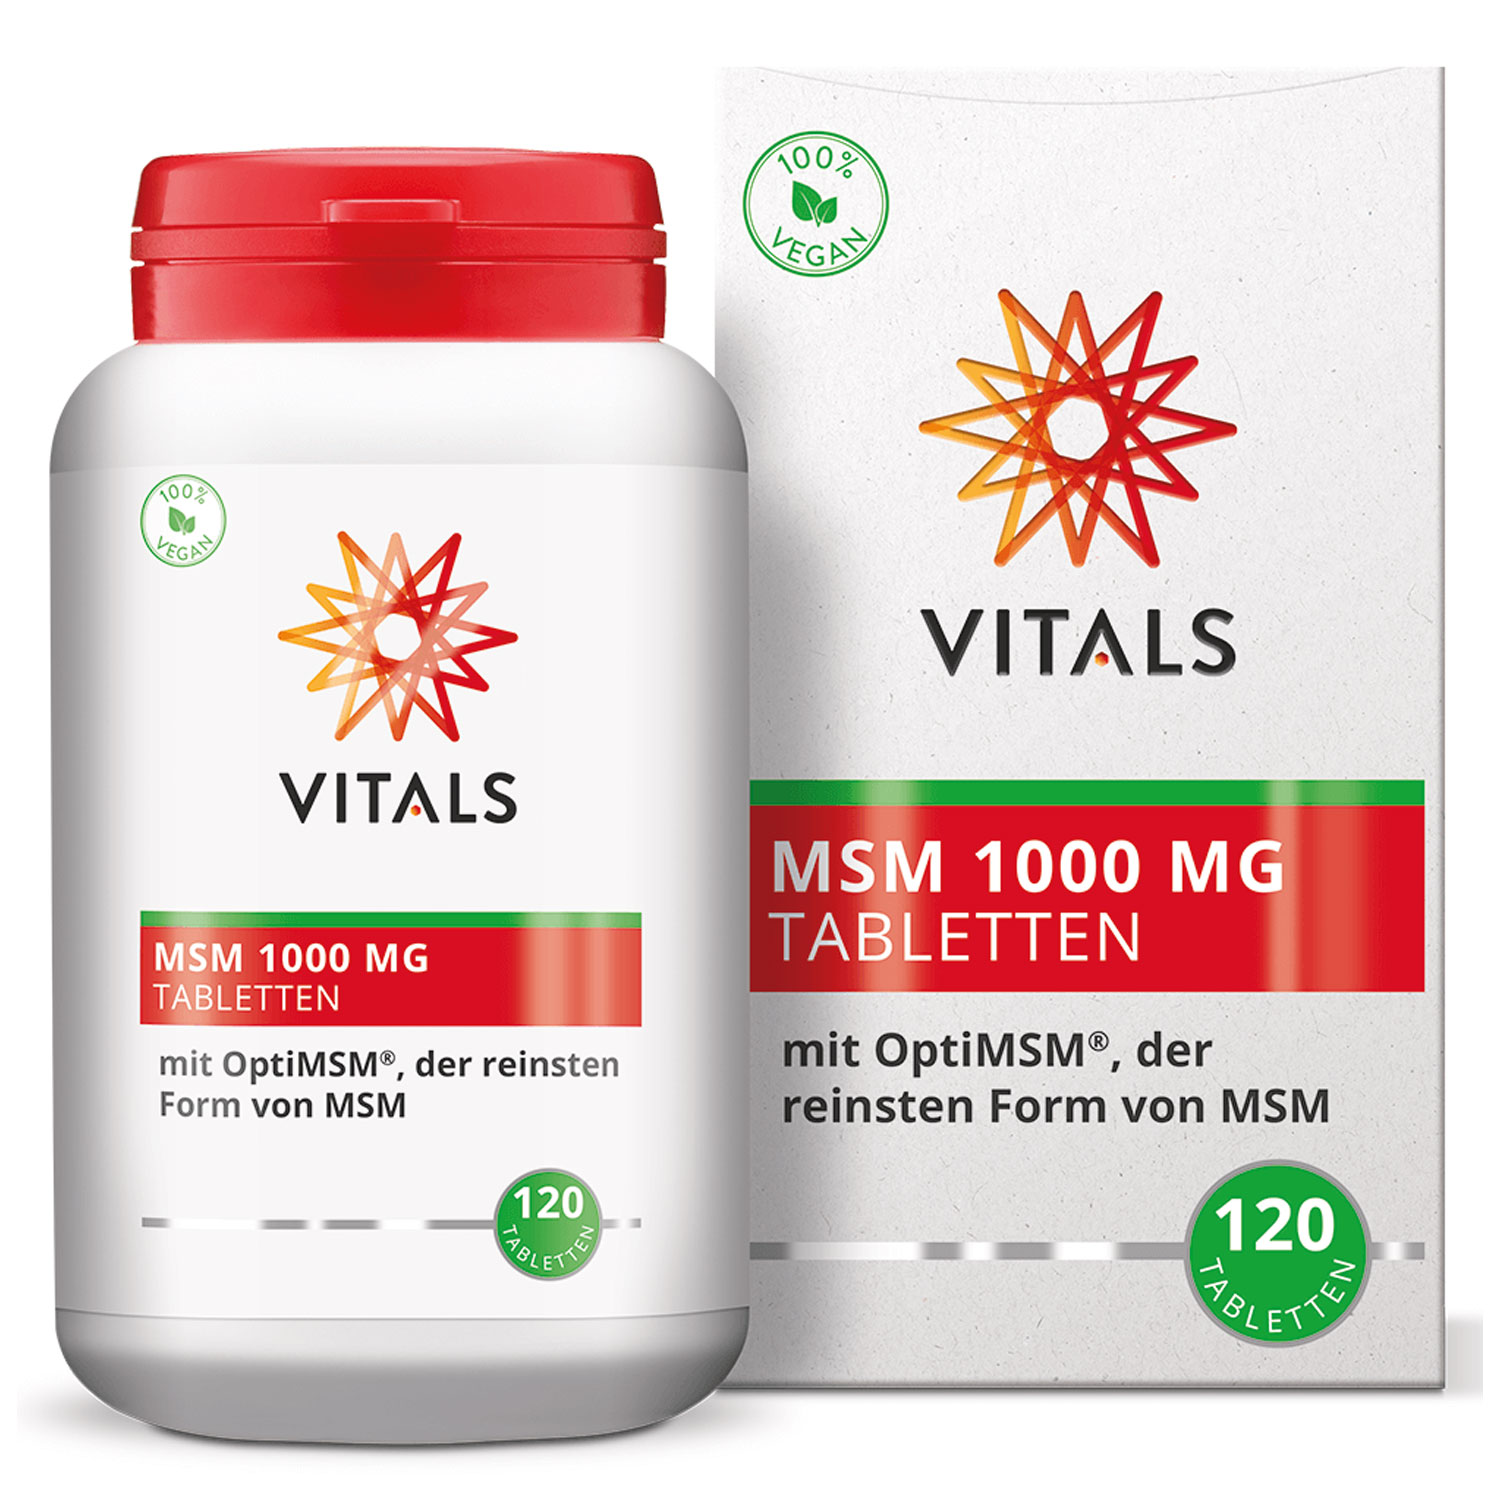 MSM 1000 mg von Vitals - Alternativansicht